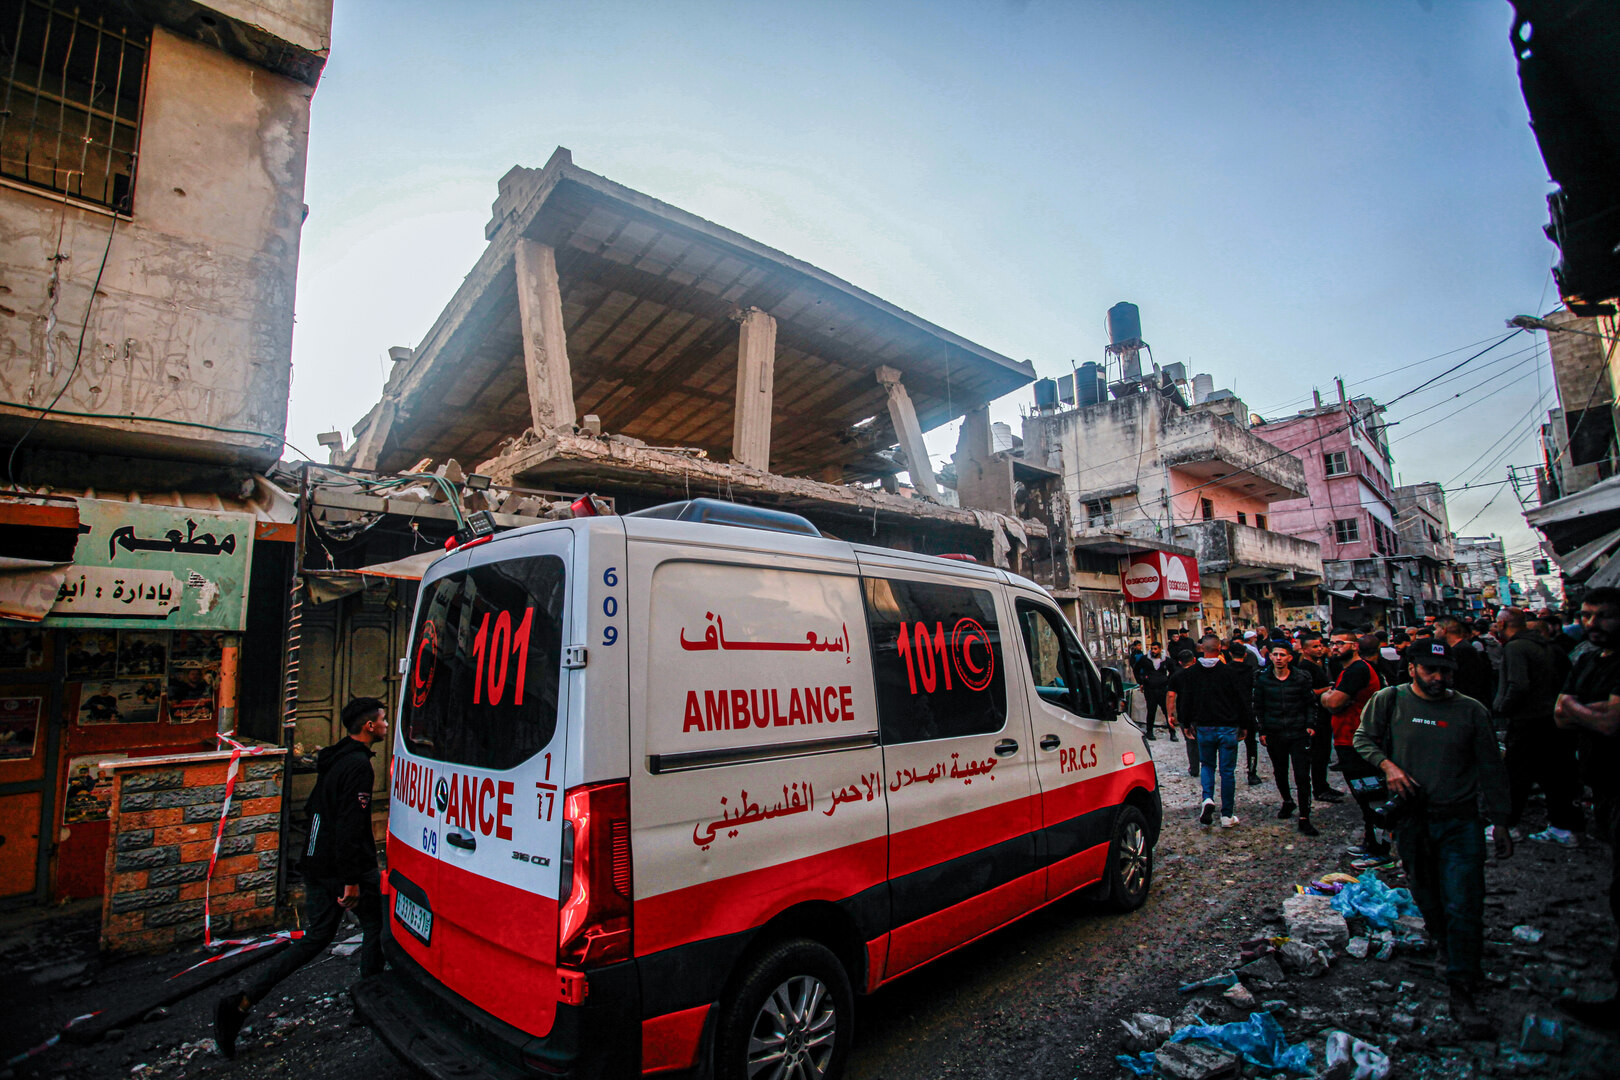 الصحّة العالمية تندّد باستهداف إسرائيل مقرا ومستشفى للهلال الأحمر الفلسطيني في غزة